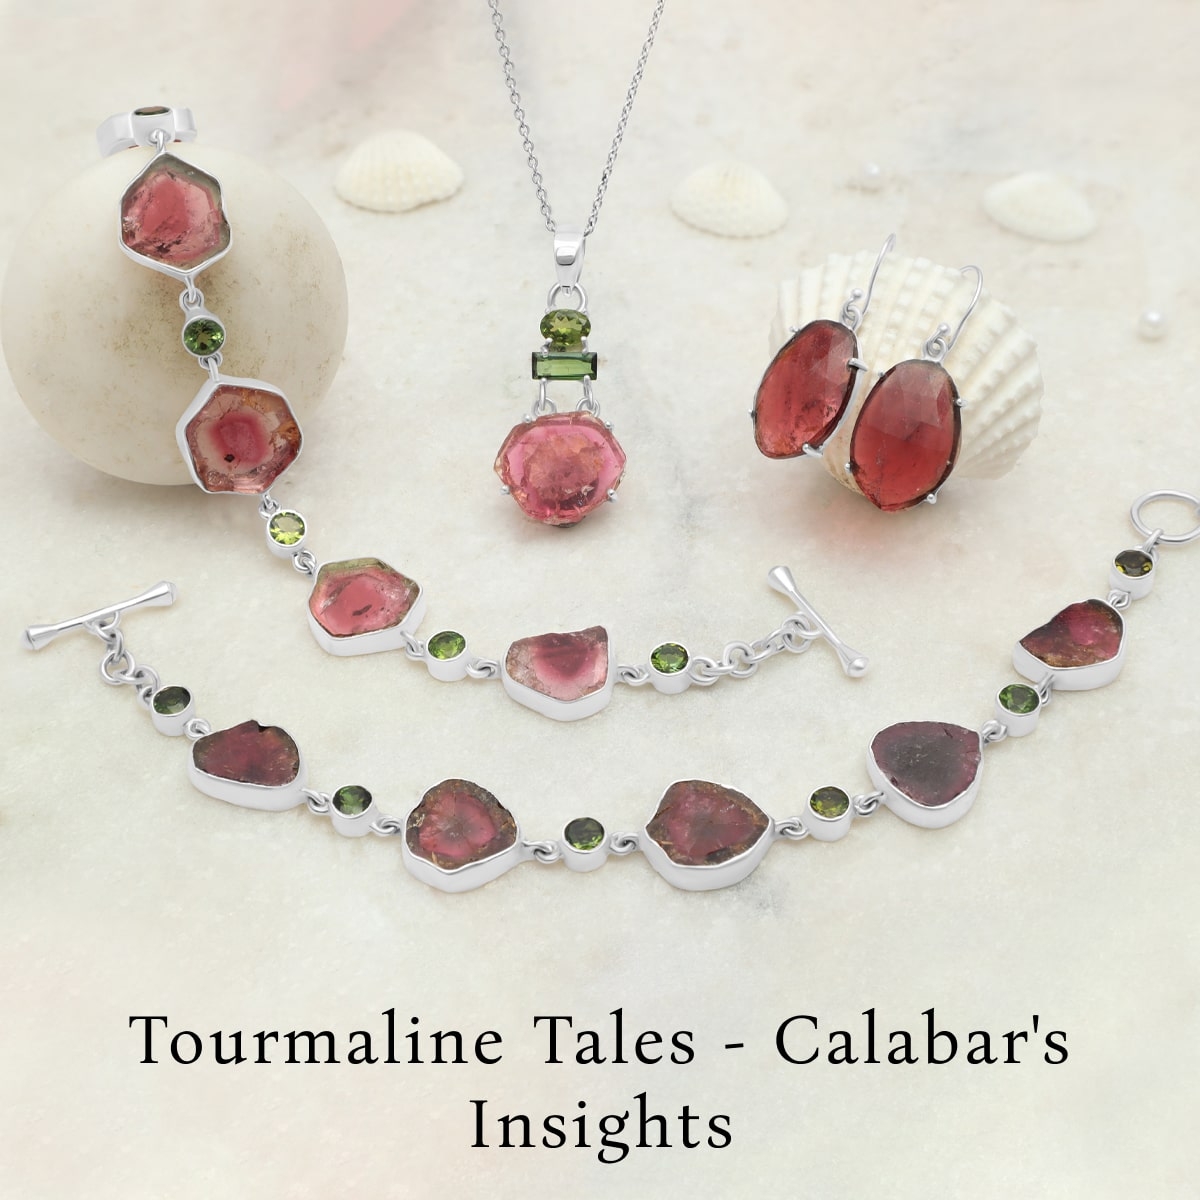 Intriguing Insights Into Calabar Tourmaline